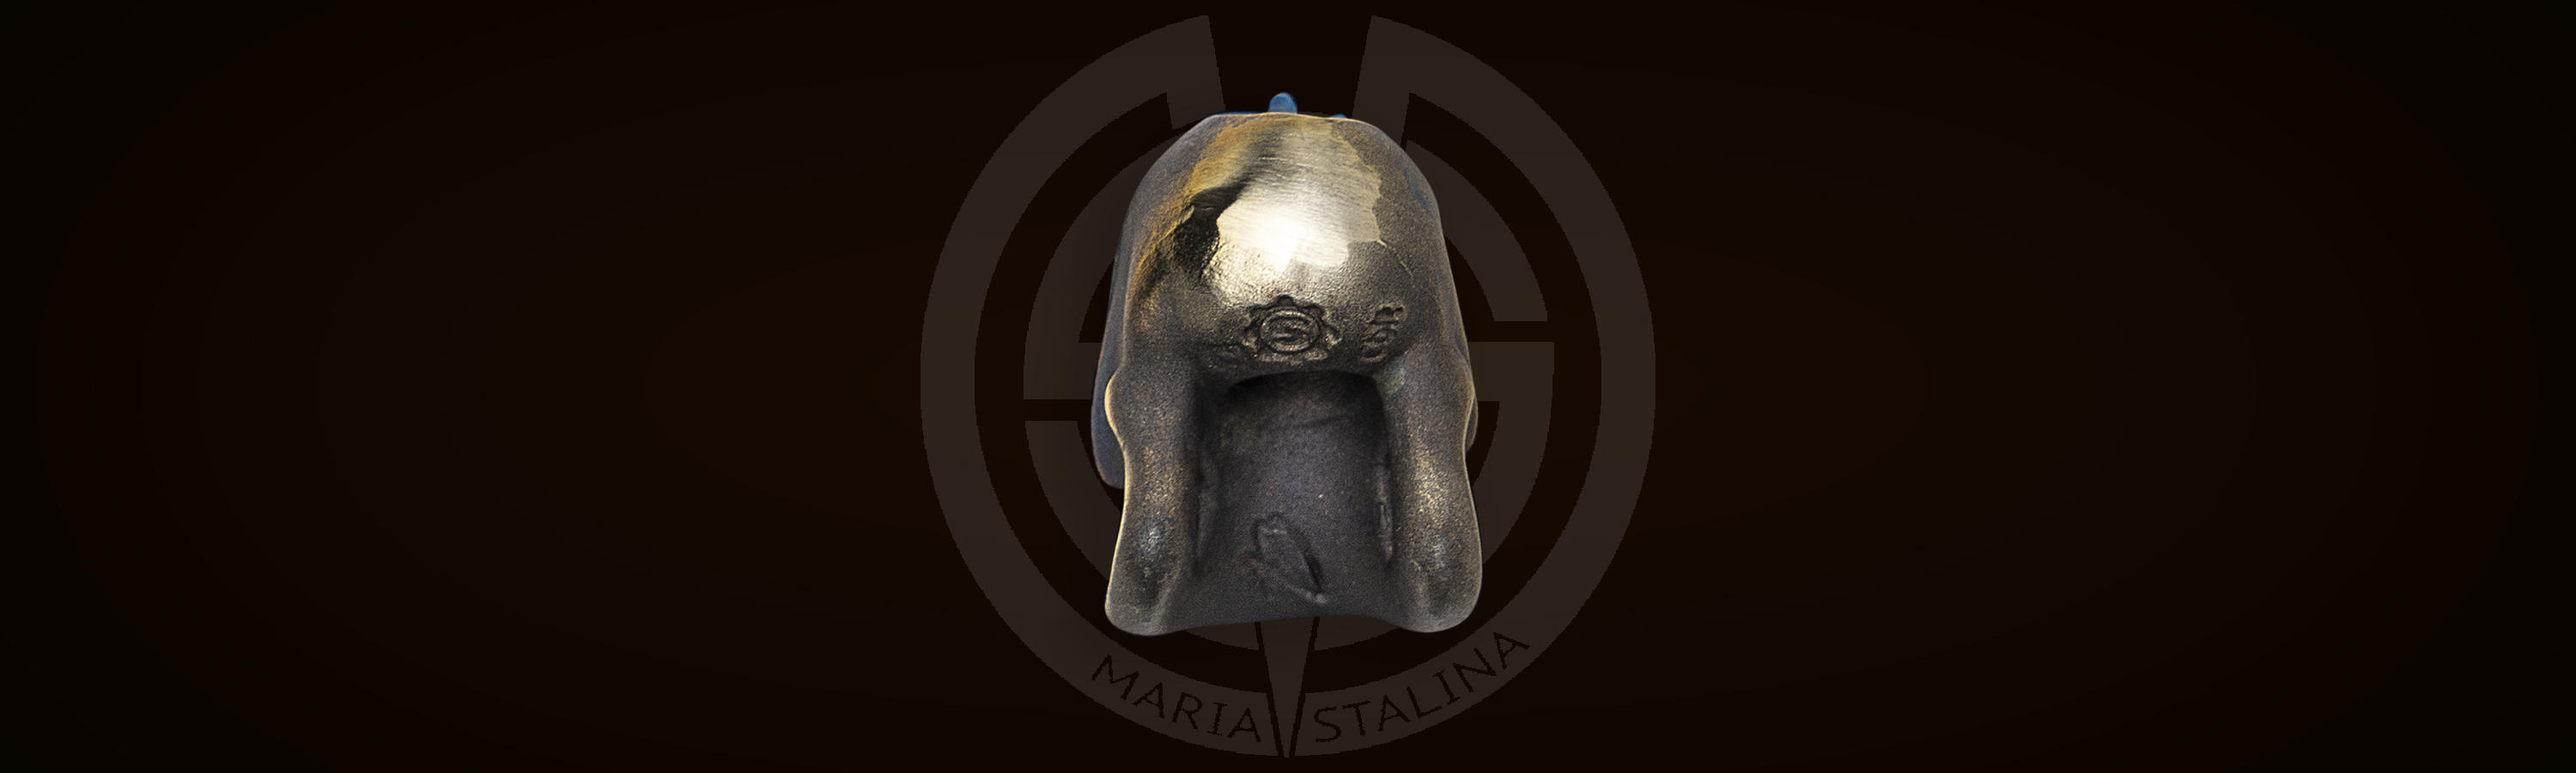 Логотип Starlingear S-gear